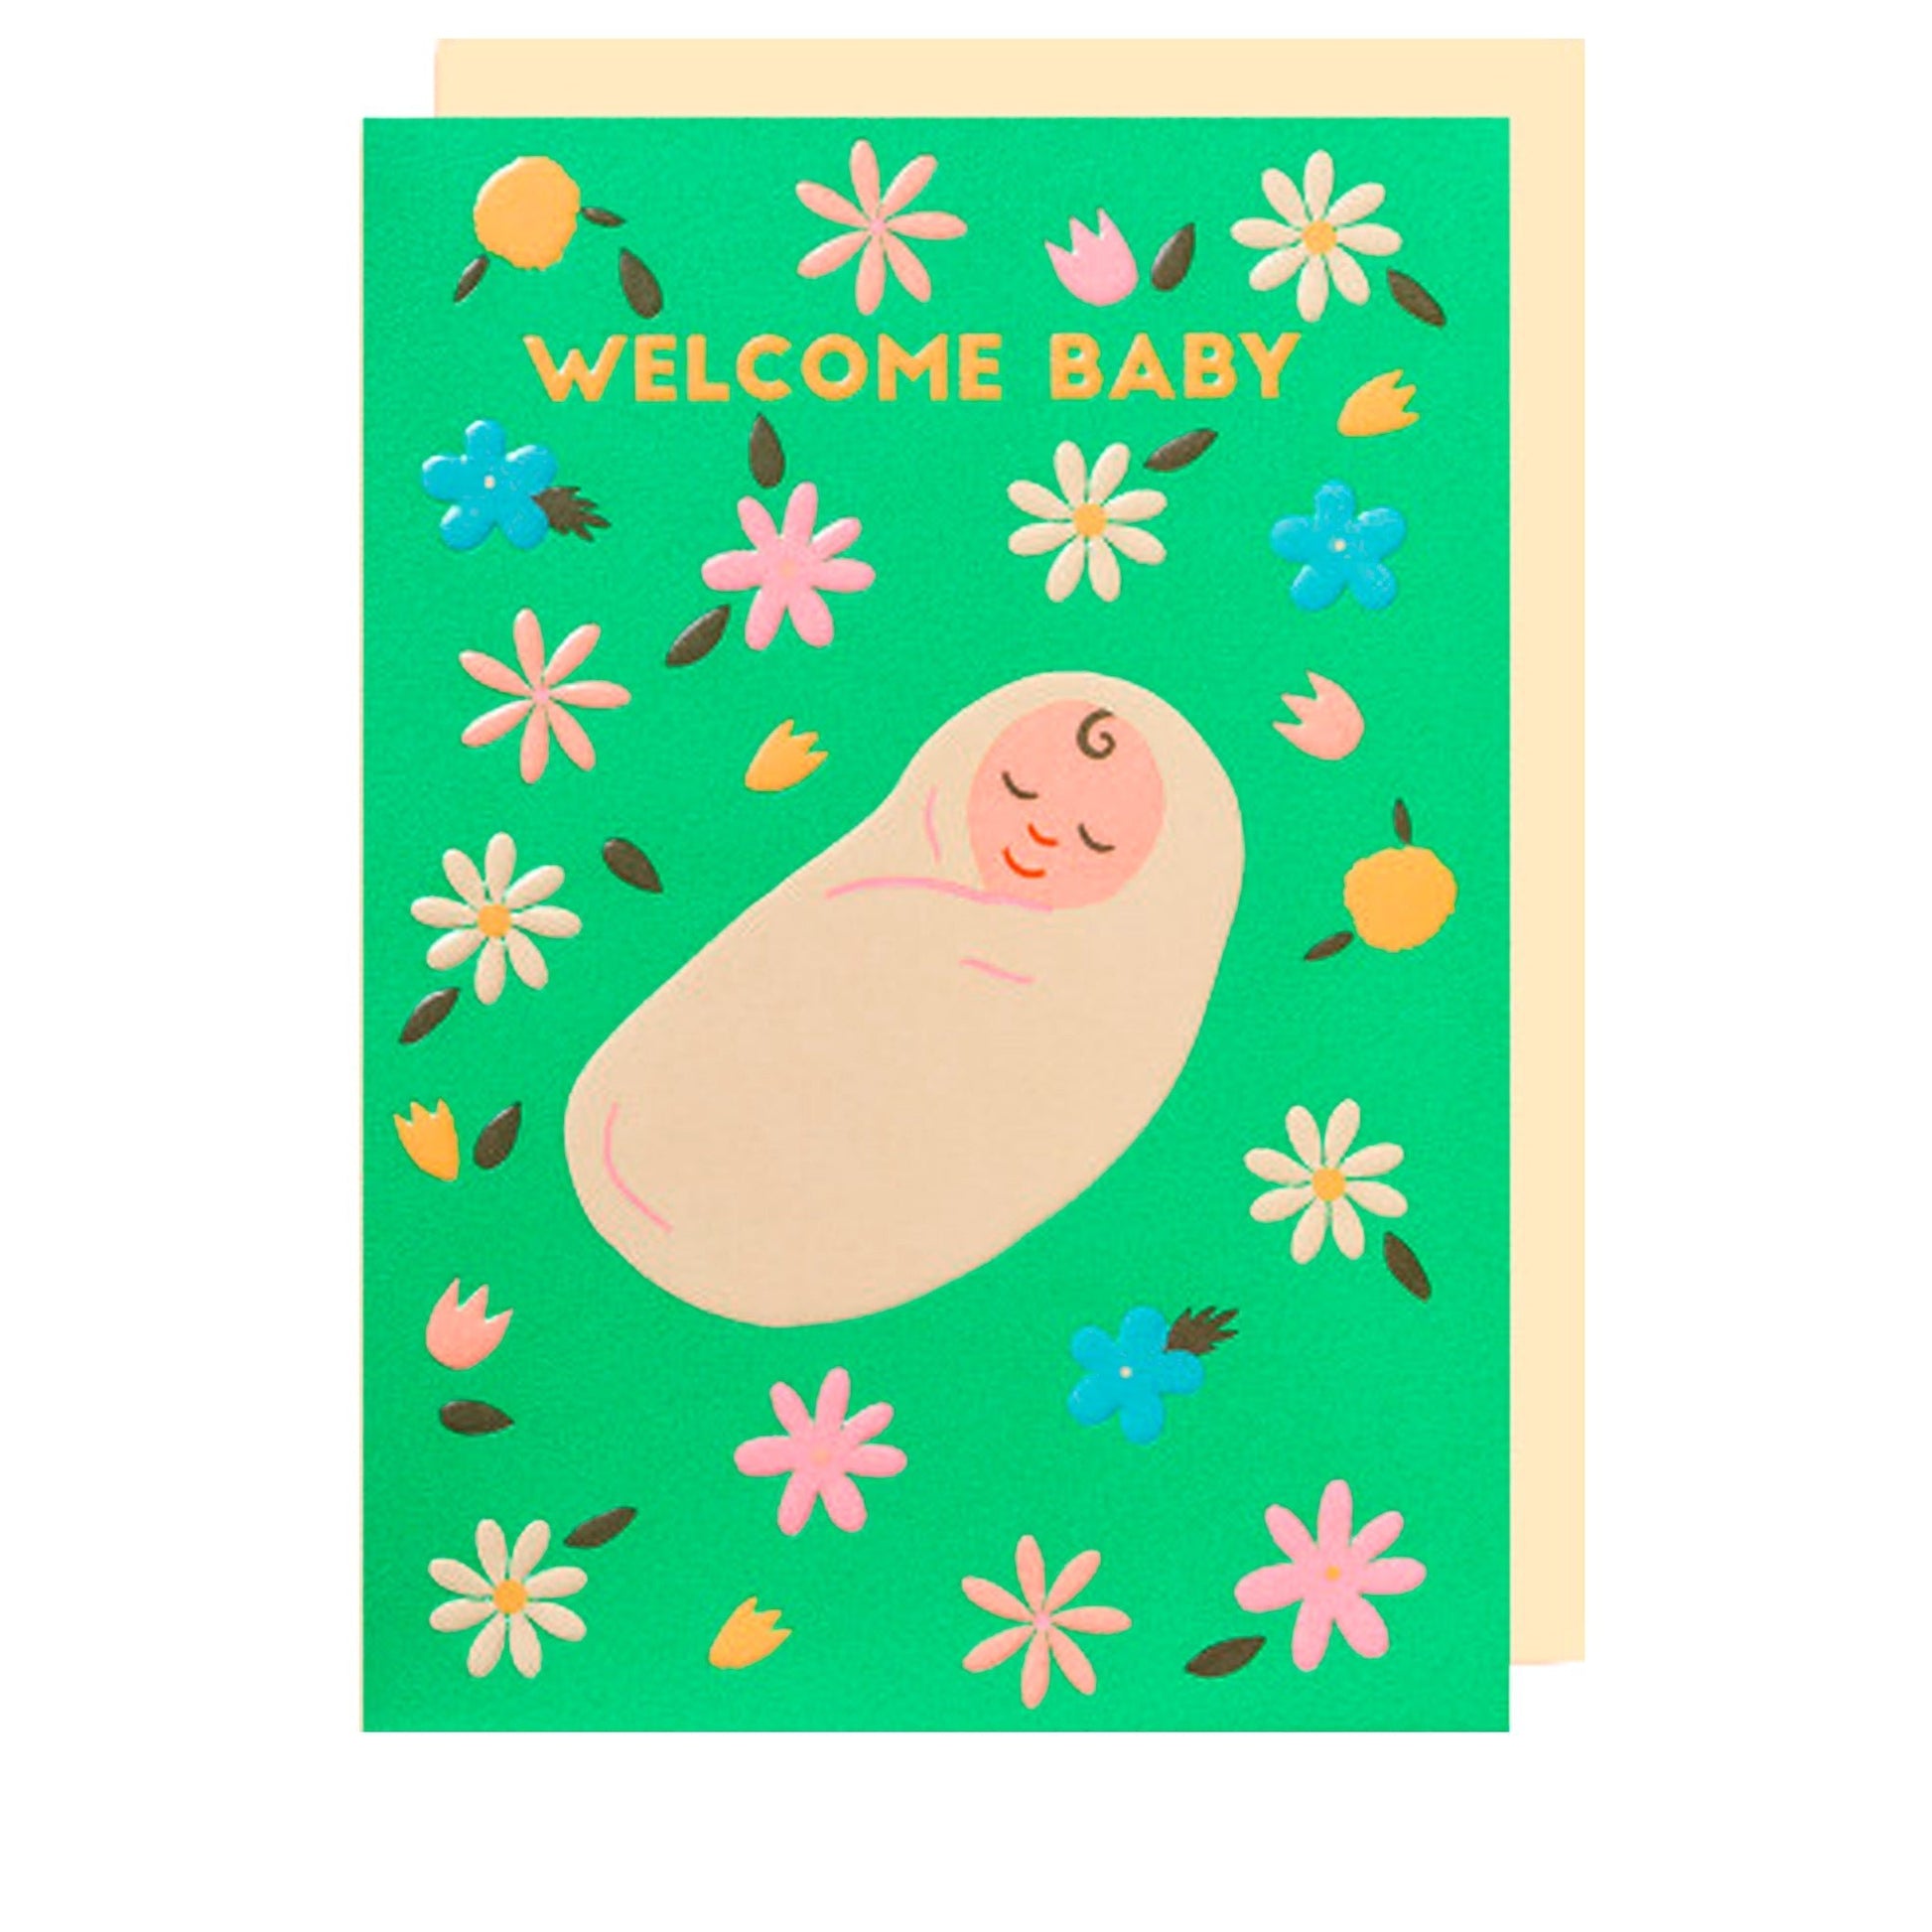 Grußkarte "Welcome Baby" - Vandeley